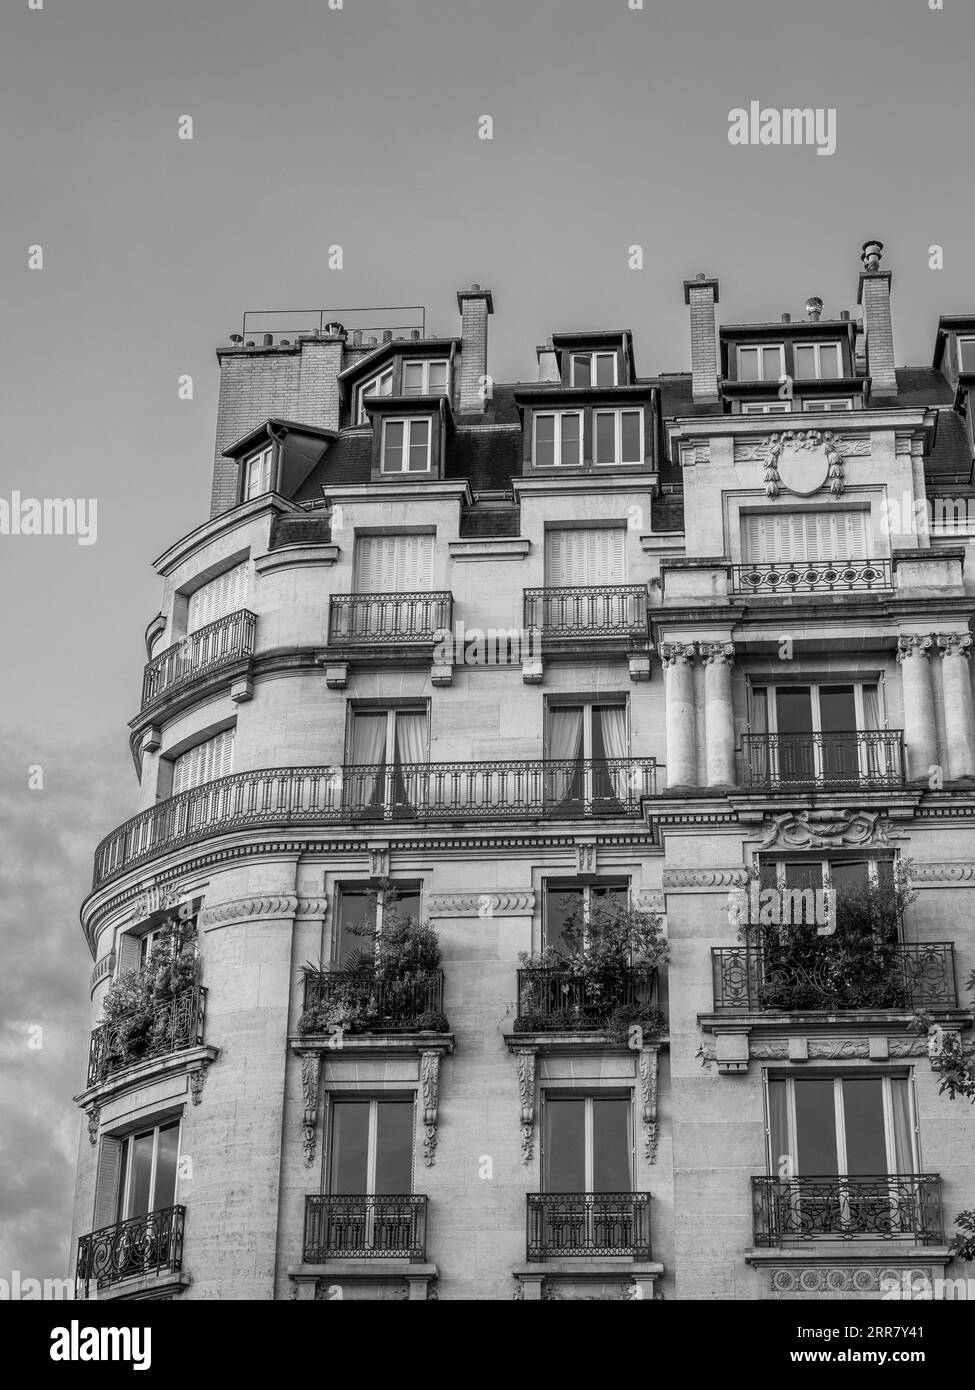 Chambre de bonne, Apartments top of Building Flats, Paris, France, Europe, EU. Stock Photo